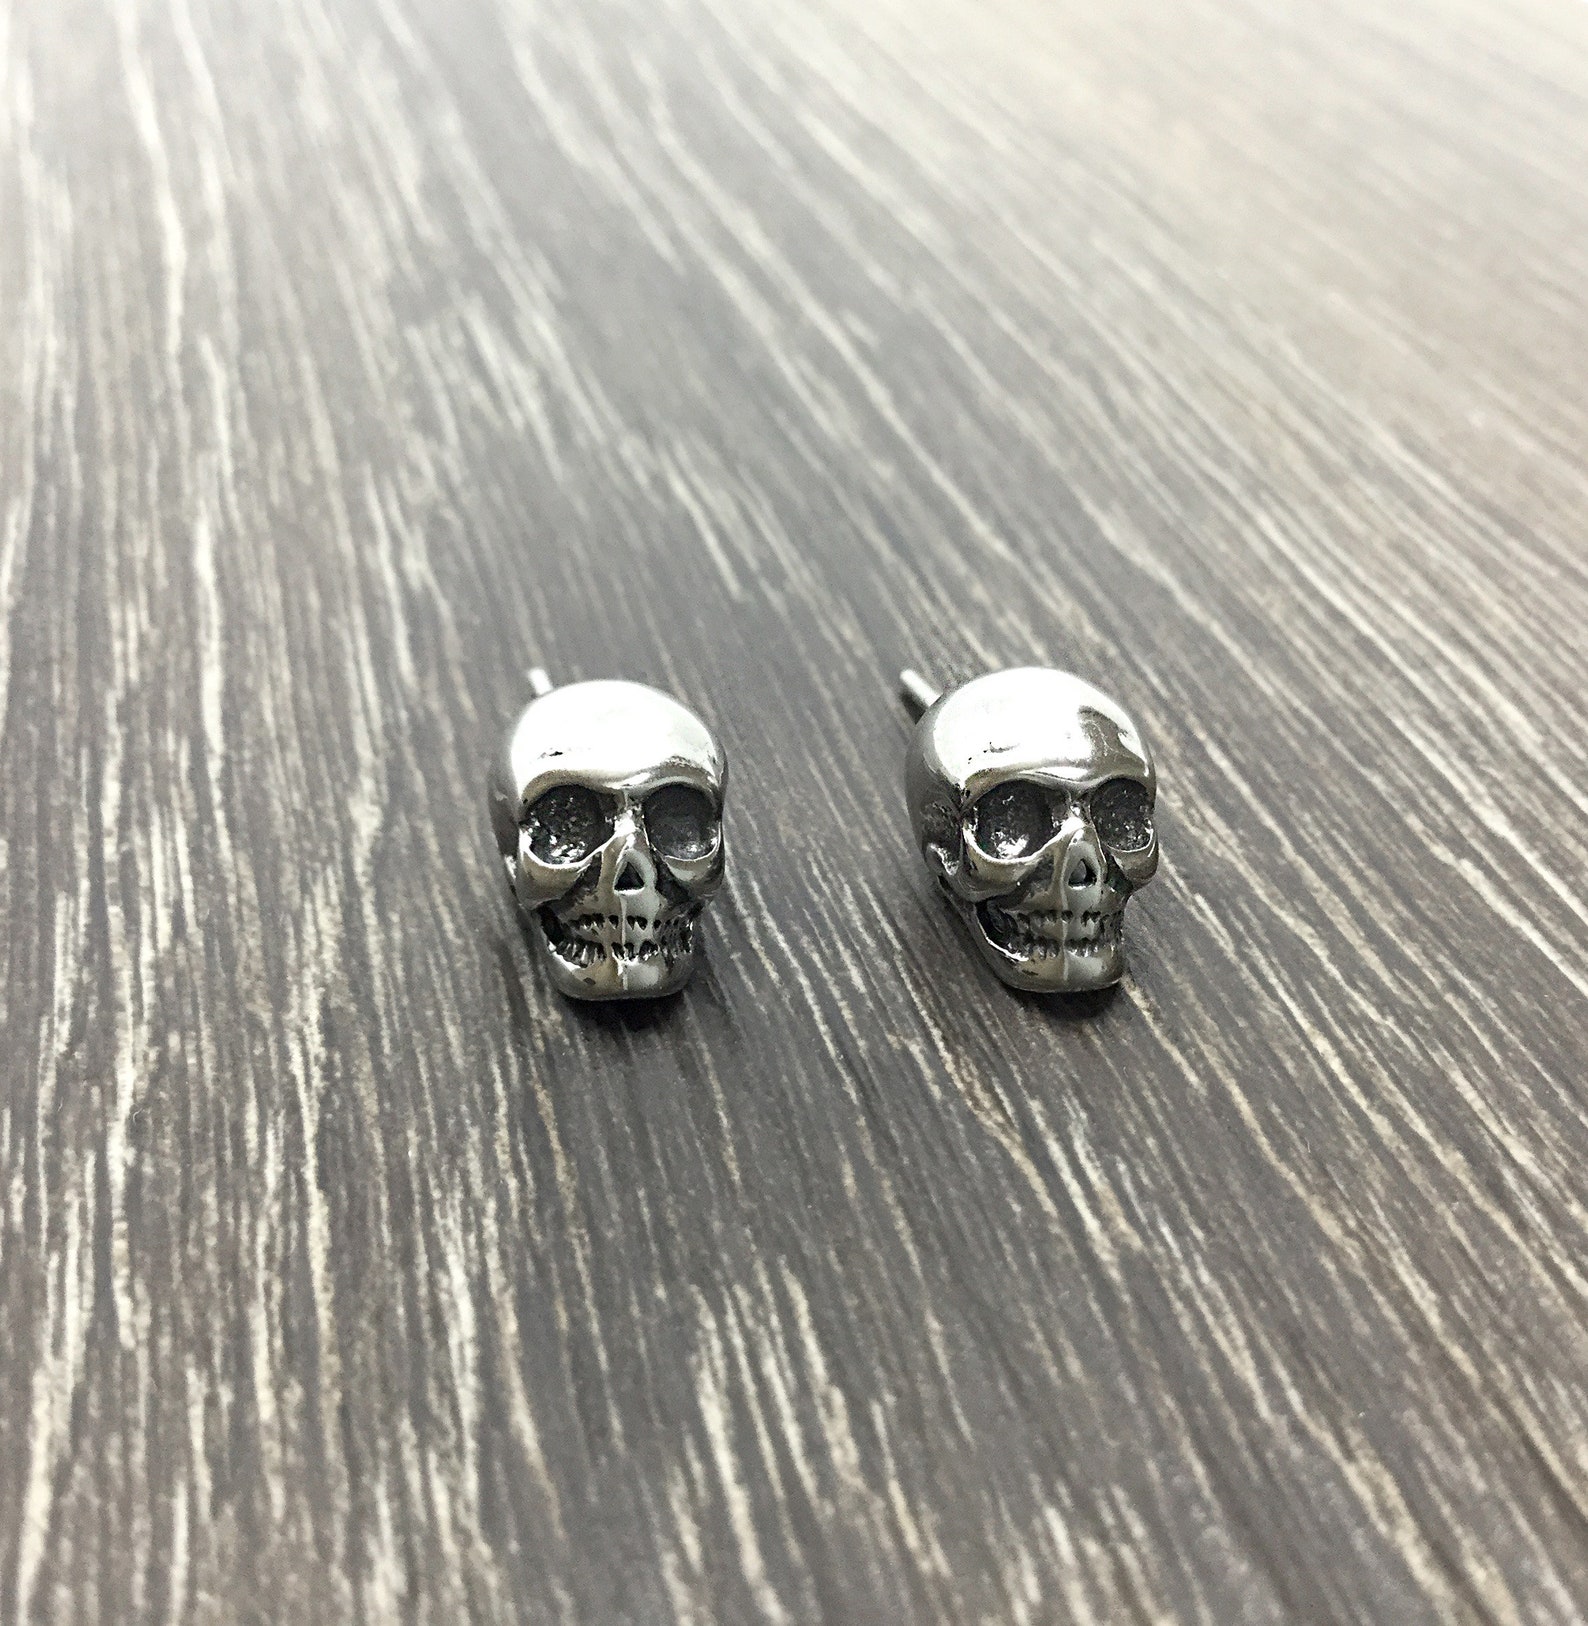 Skull earrings skull studs skull jewelry stainless steel | Etsy